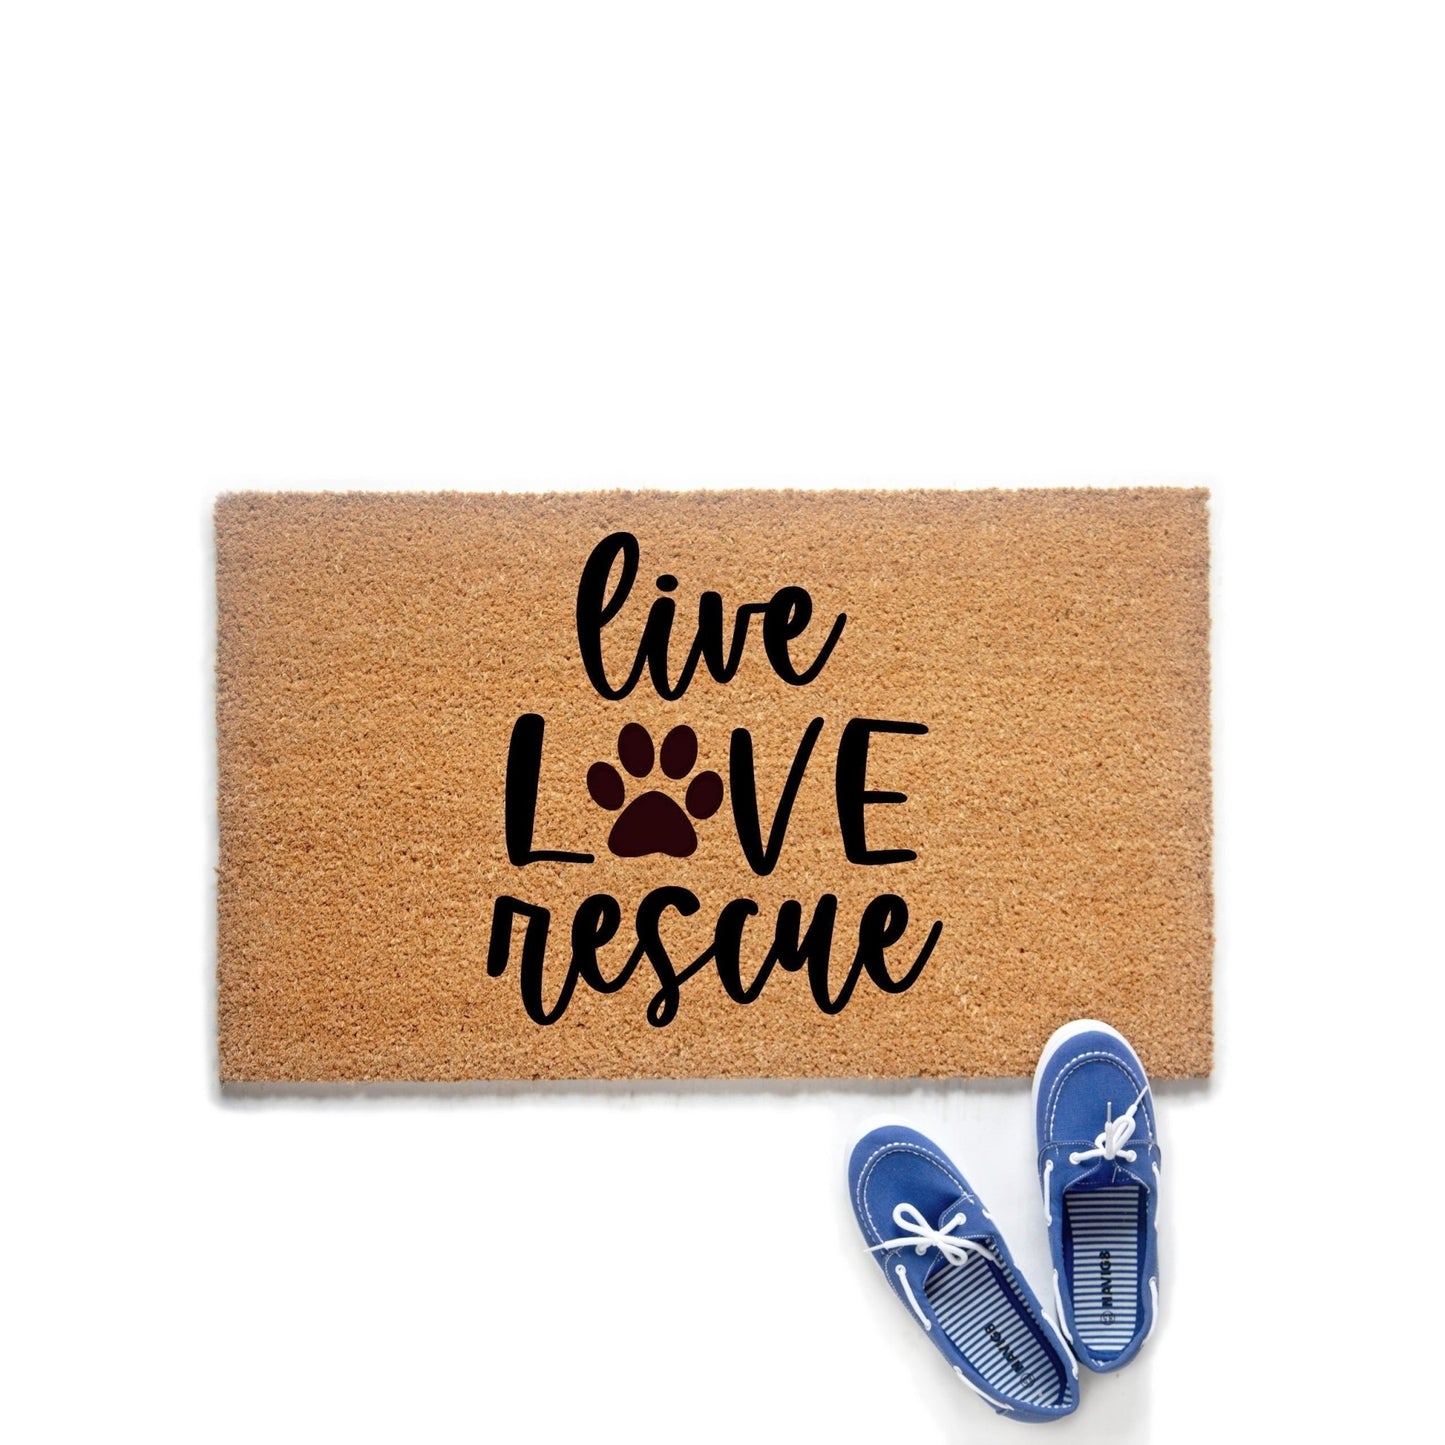 Live Love Rescue Doormat